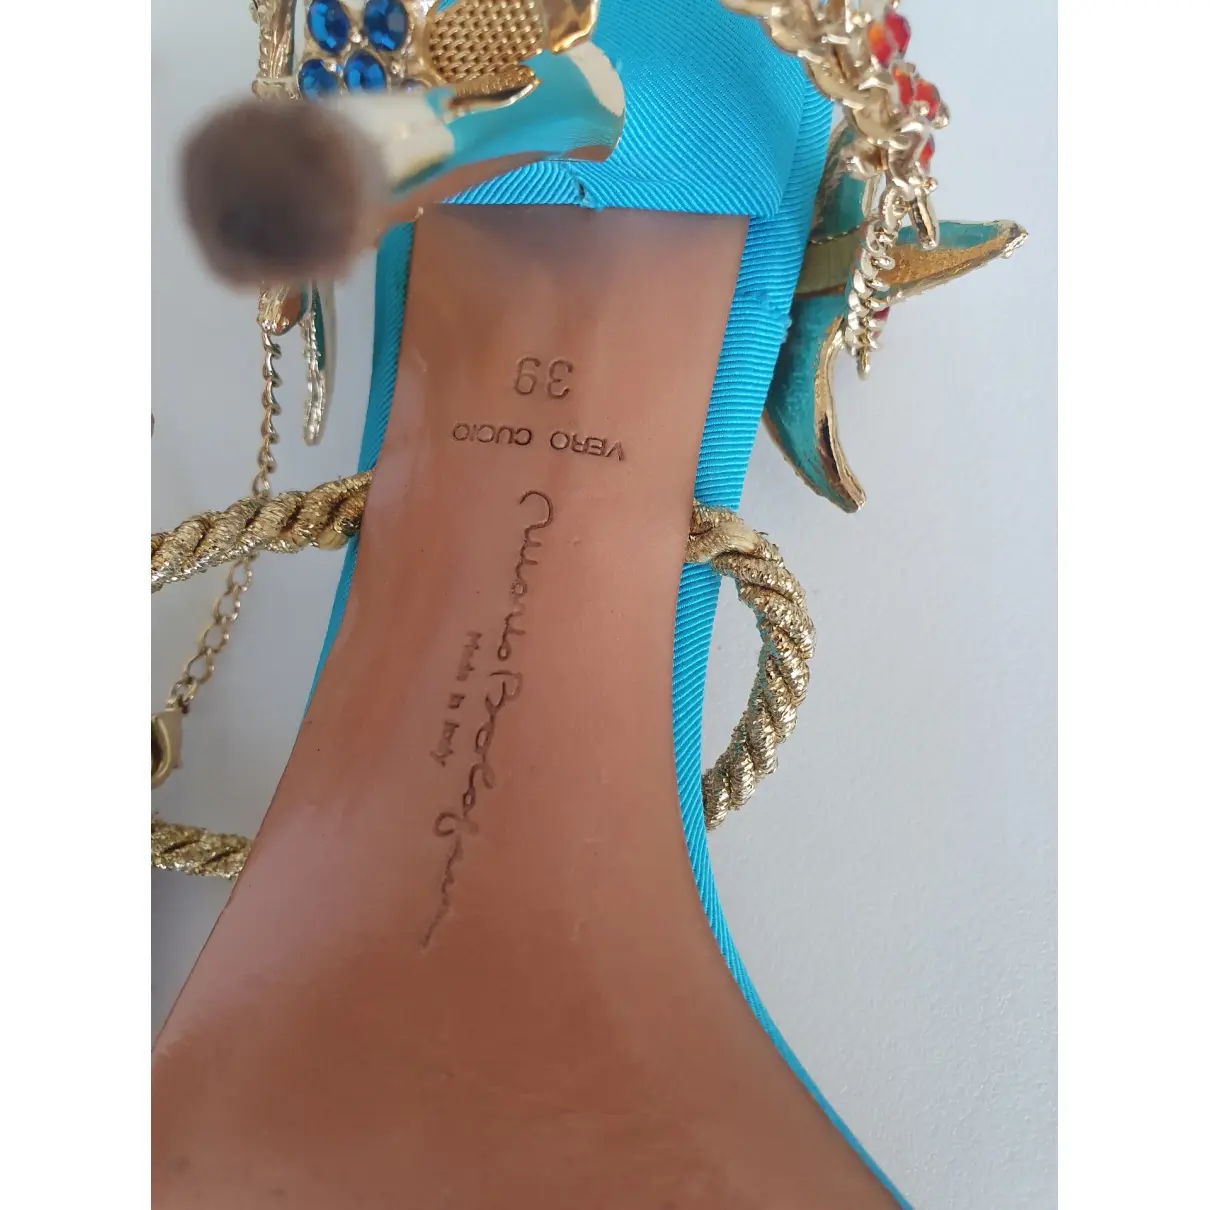 Luxury Karen Millen Sandals Women